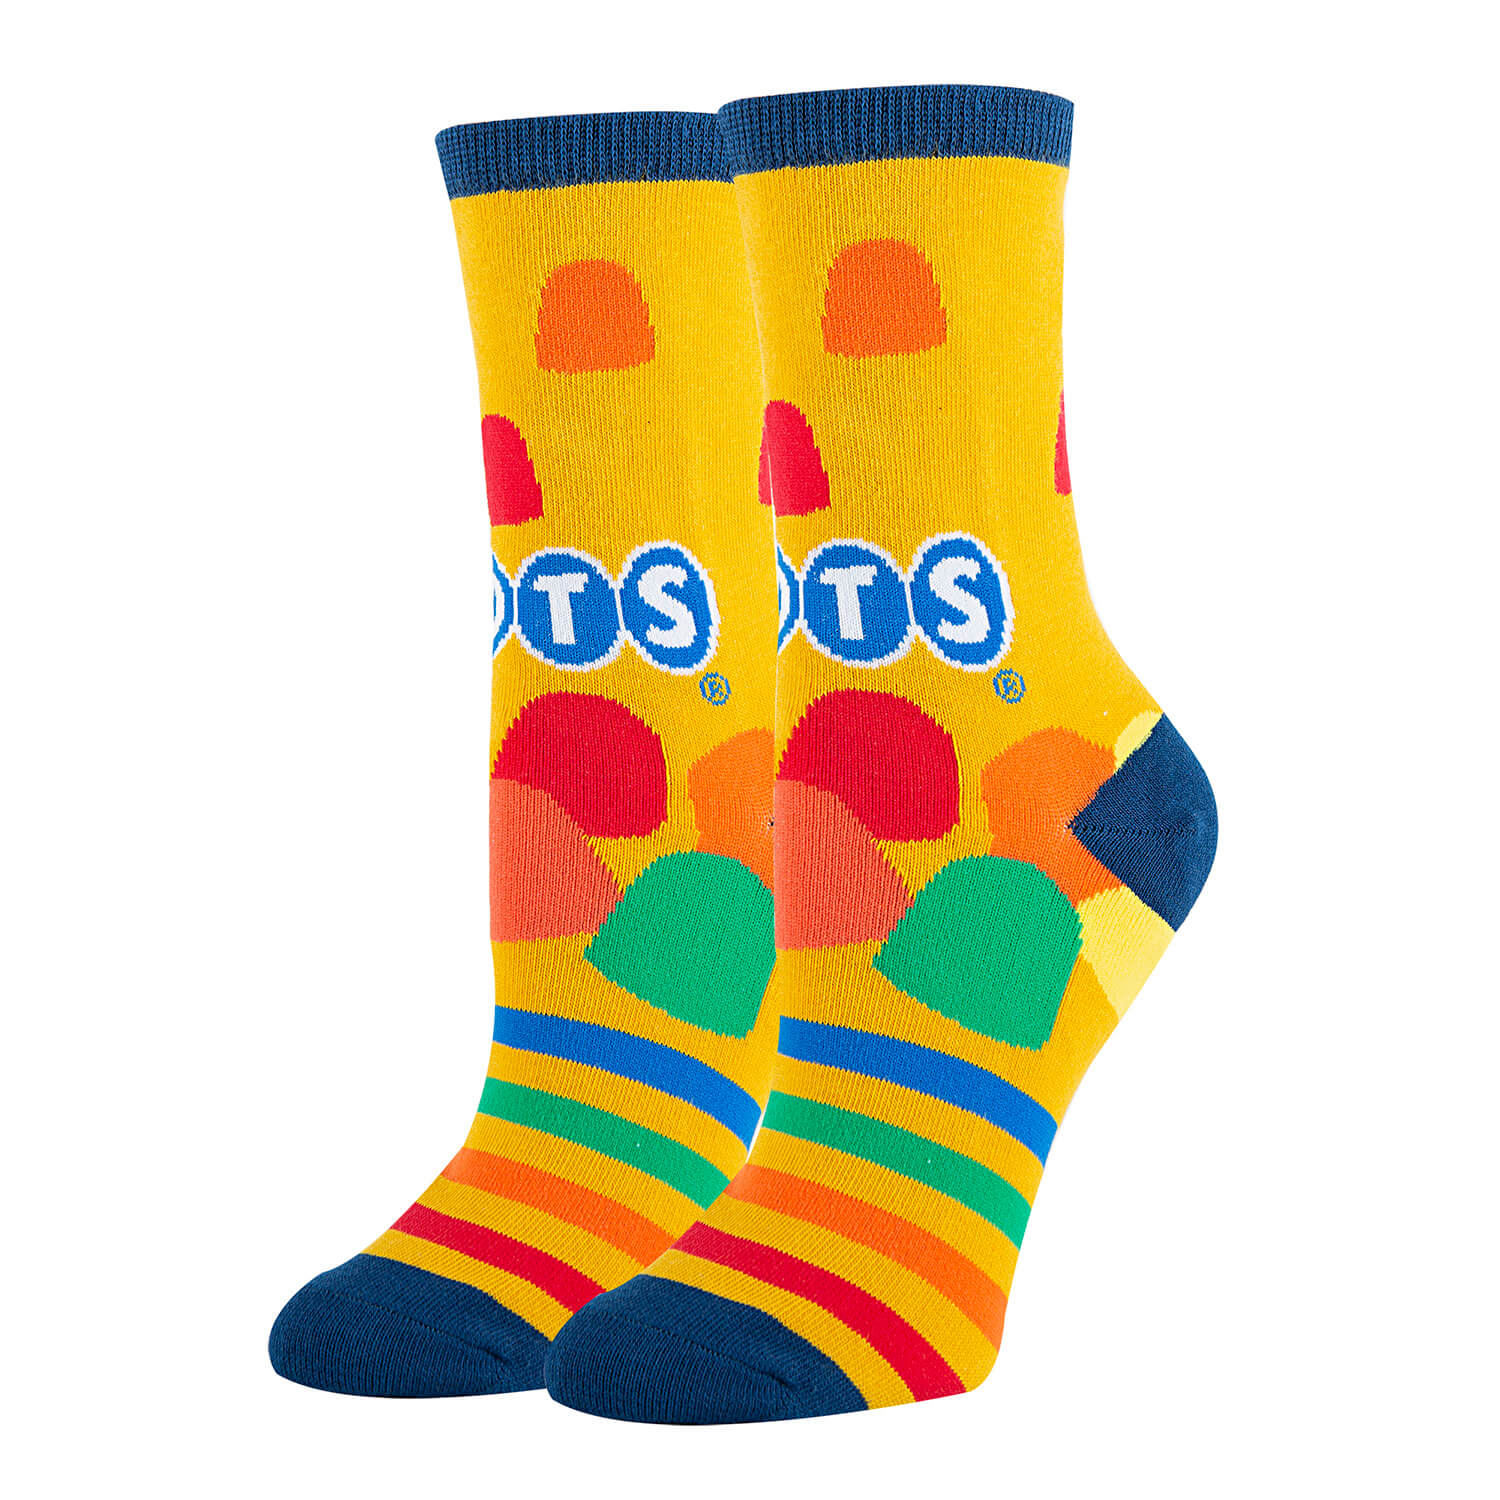 Dots Socks | Novelty Crew Socks For Womens